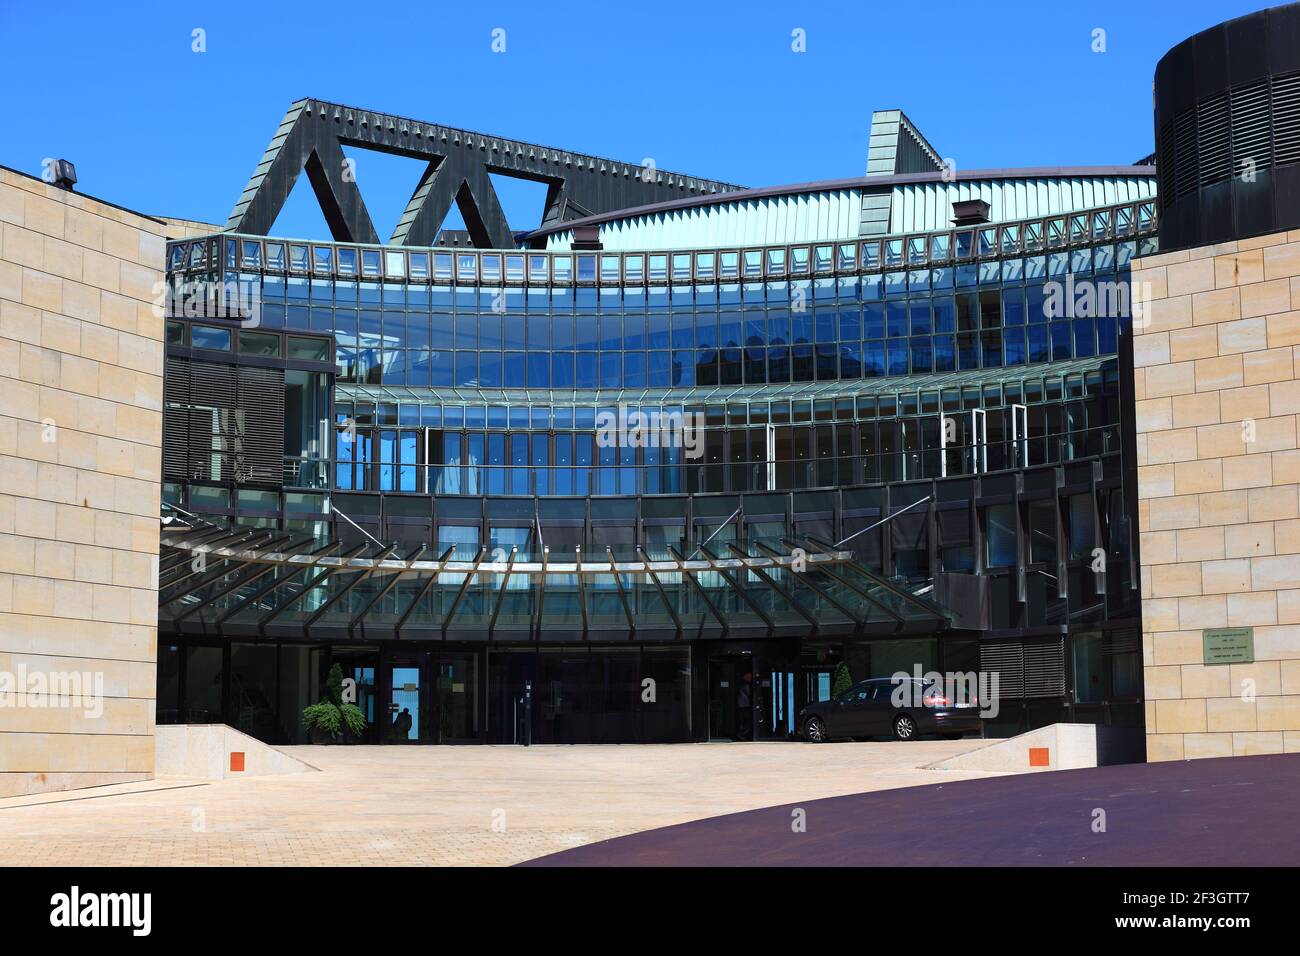 Landtagsgebäude Nordrhein-Westfalen, Haus des Landtages, Stromstraße, Regierungsviertel, Düsseldorf, Nordrhein-Westfalen, Deutschland Stock Photo